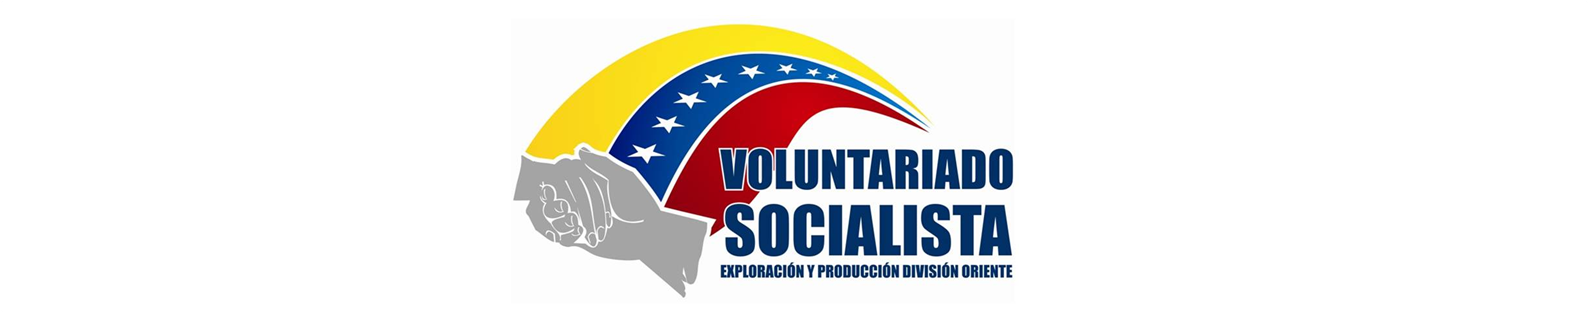 Voluntariado Socialista de la Nueva Pdvsa